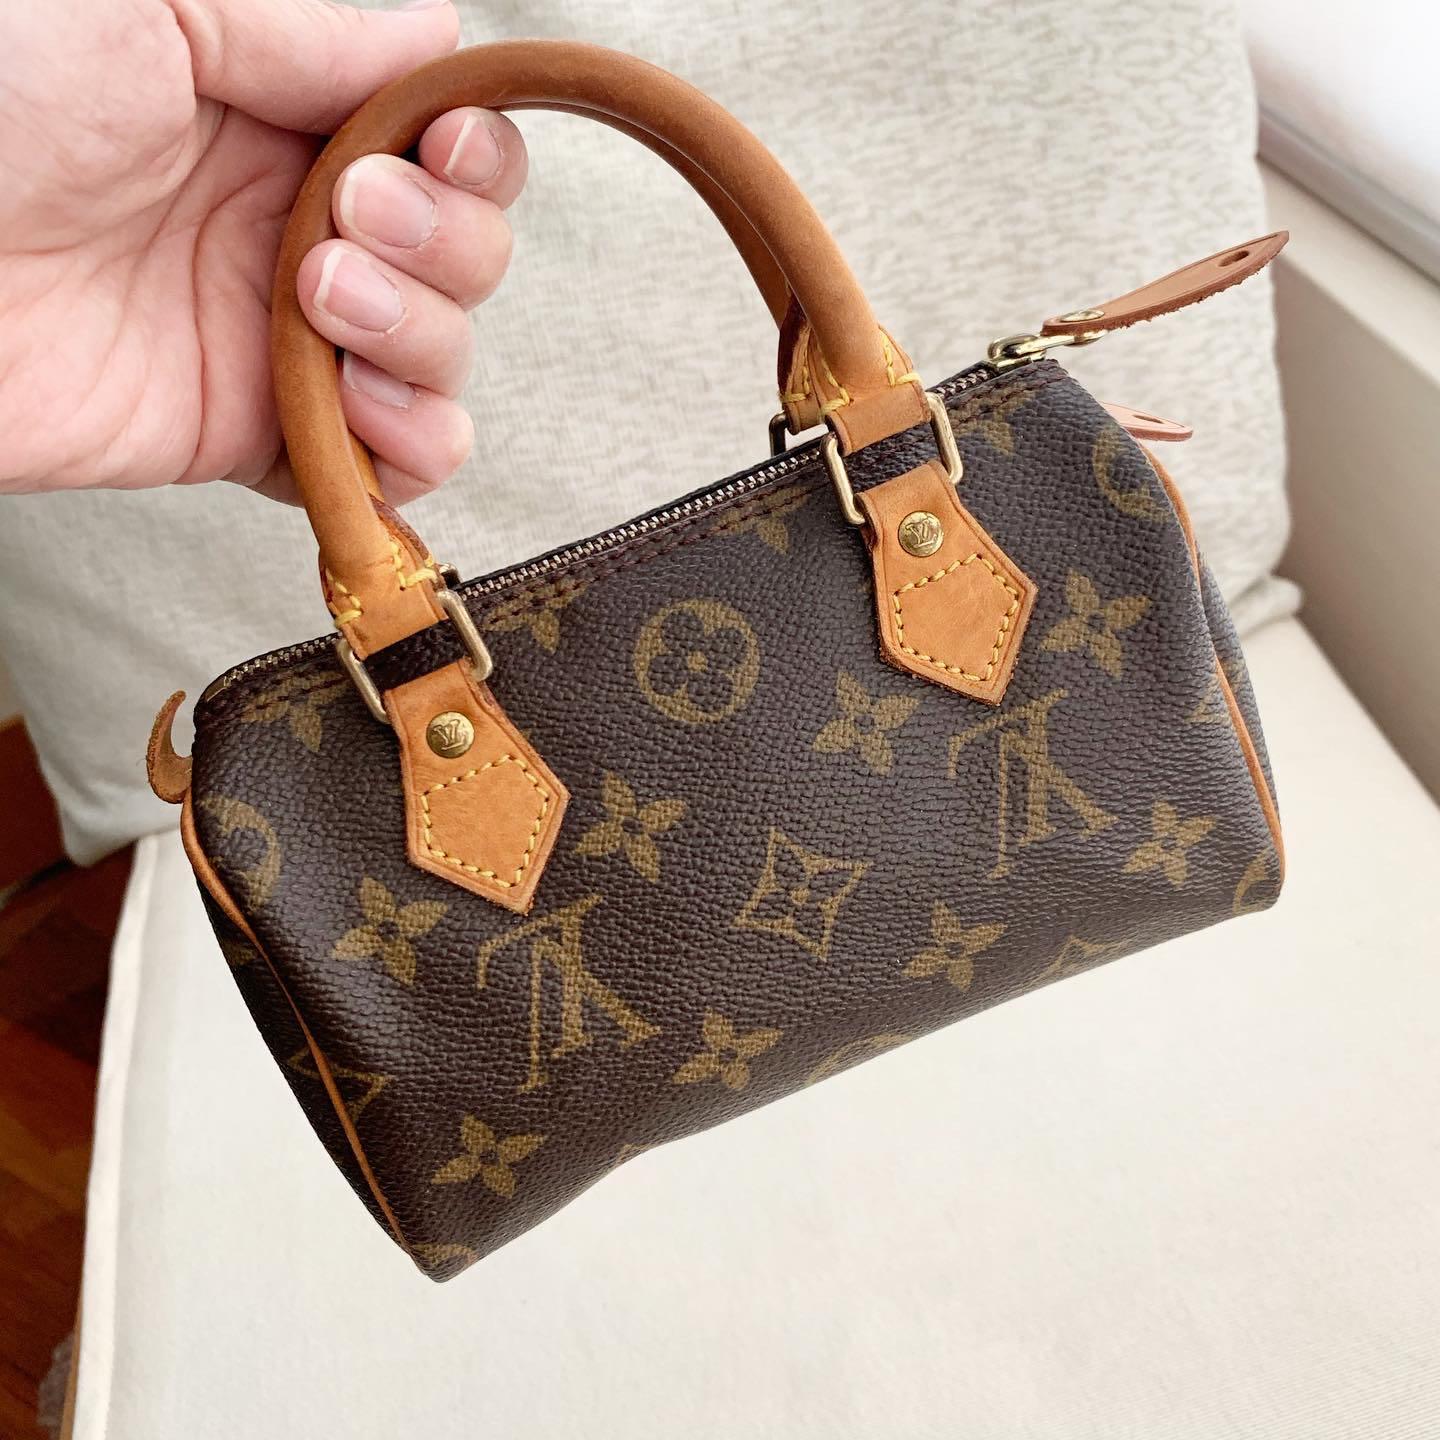 LV mini speedy sling bag 16*11*9cm - For The Love Of Bags